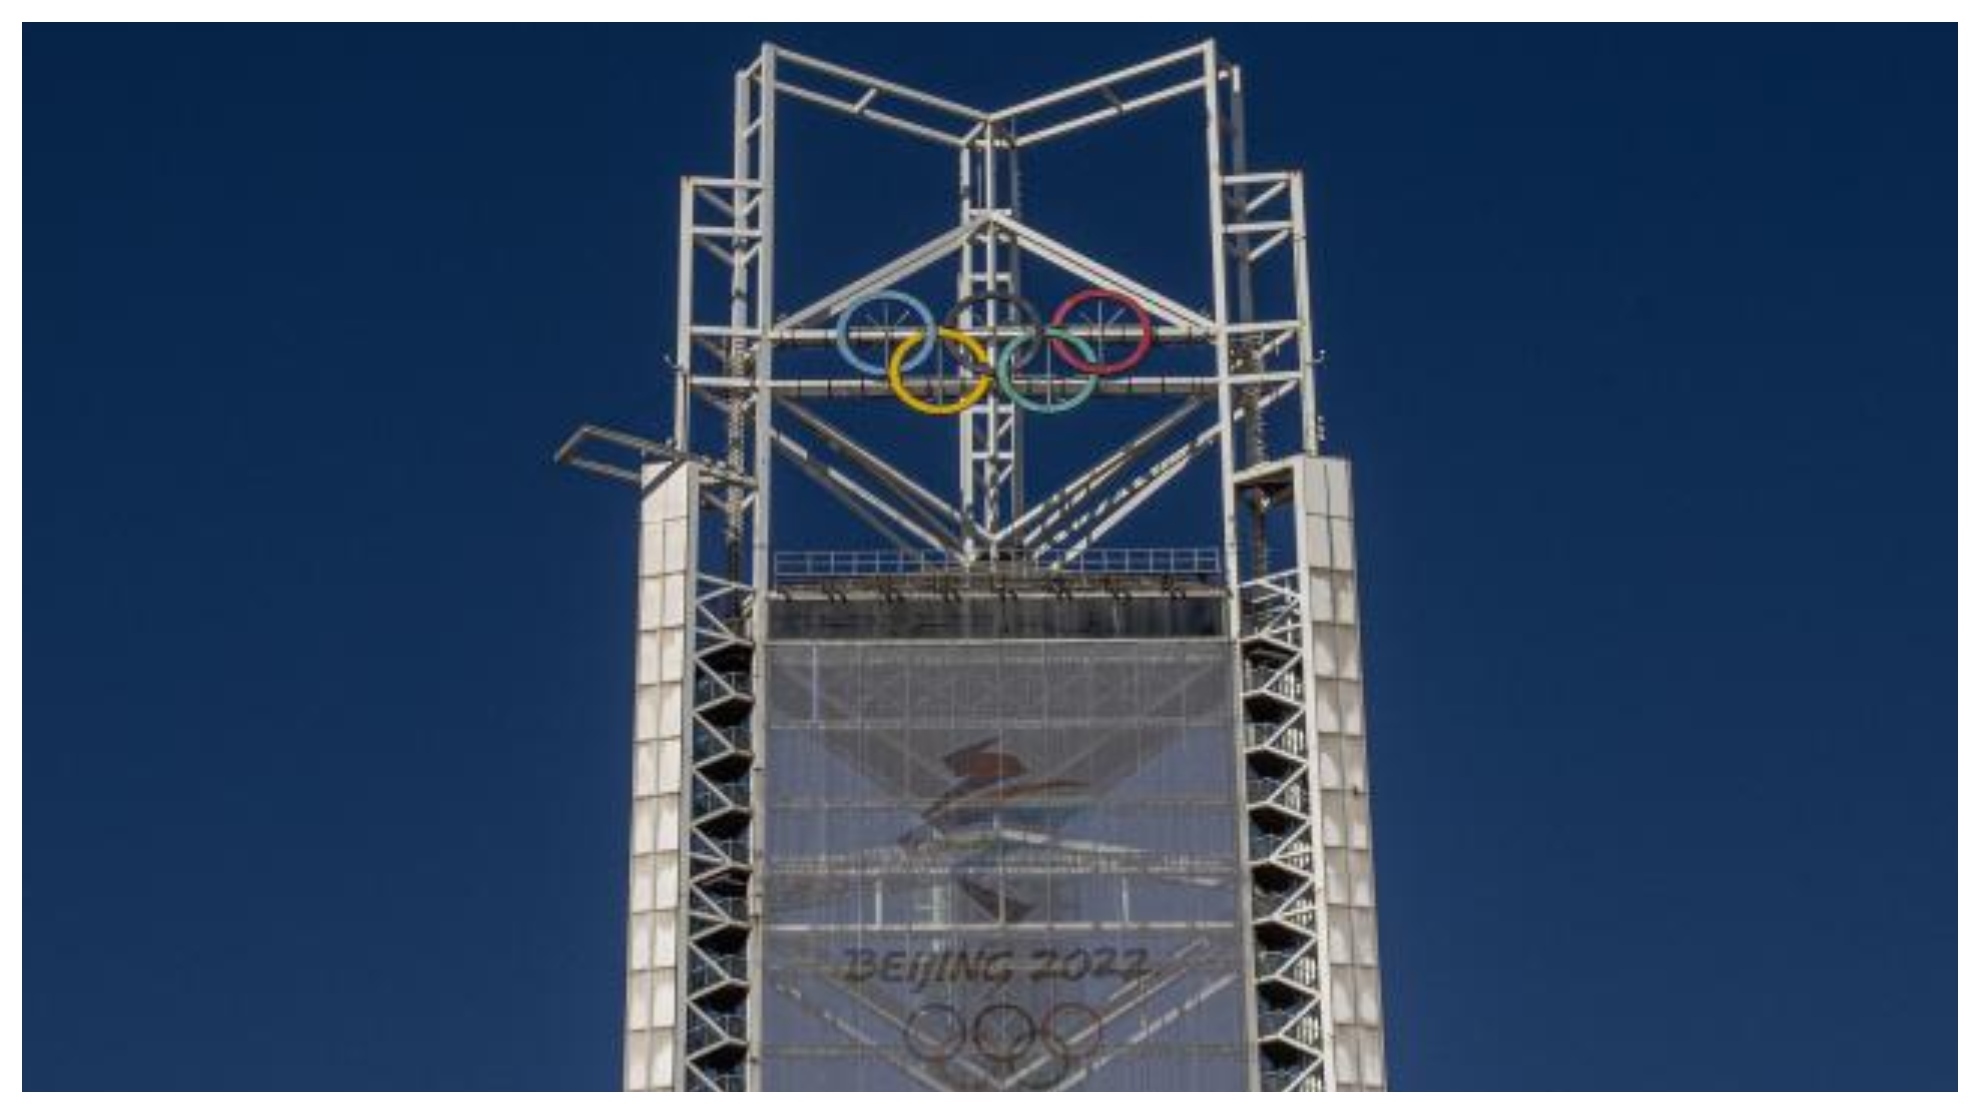 Torre en Pekín que indica la cuenta atrás hasta el inicio de los Juegos de Invierno.